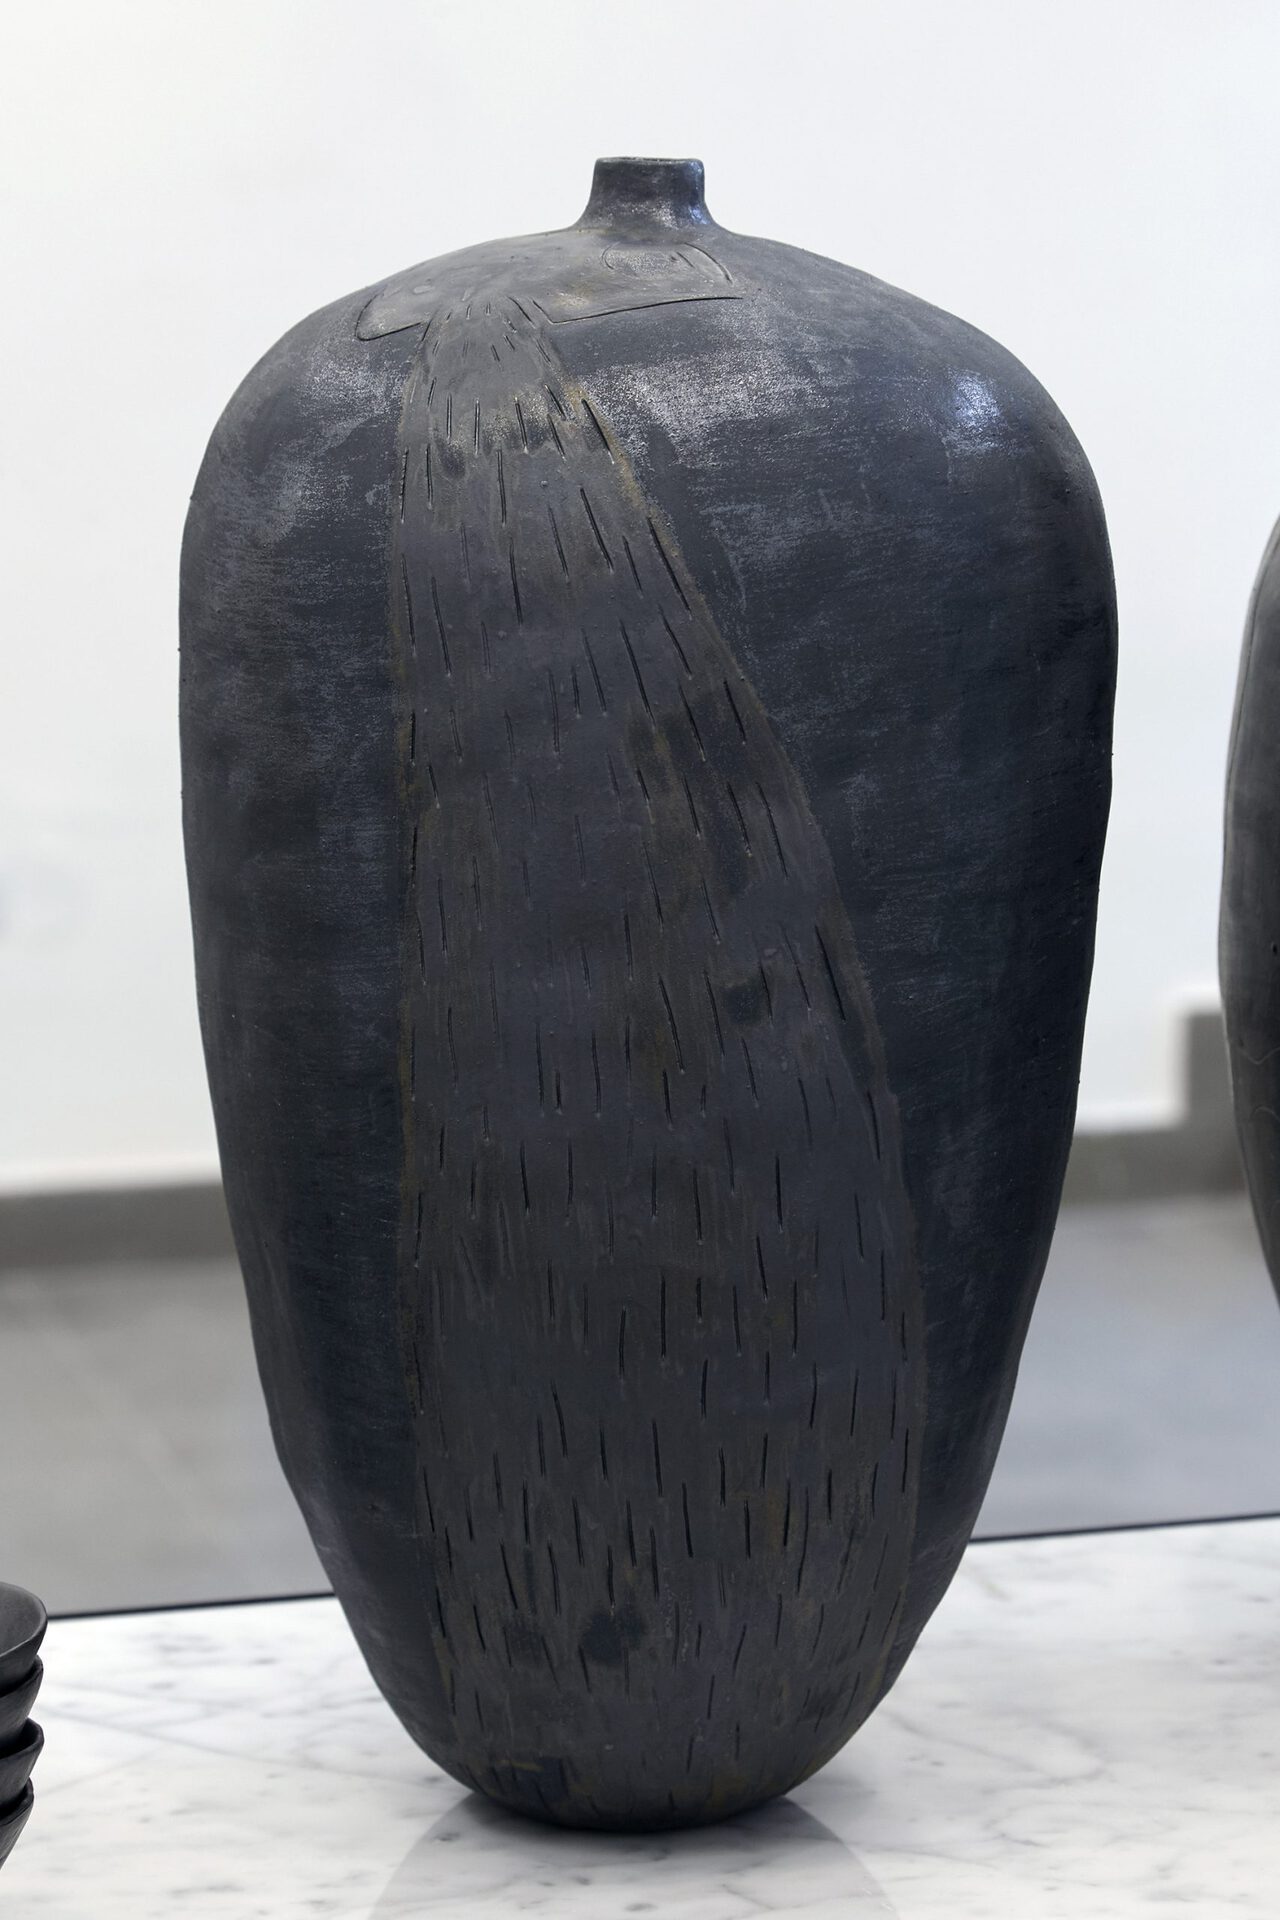 Sári Ember: Vase with vomiting head, 2020, ceramics, 48x26x25 cm, Photo: Sári Ember, courtesy of Ani Molnár Gallery